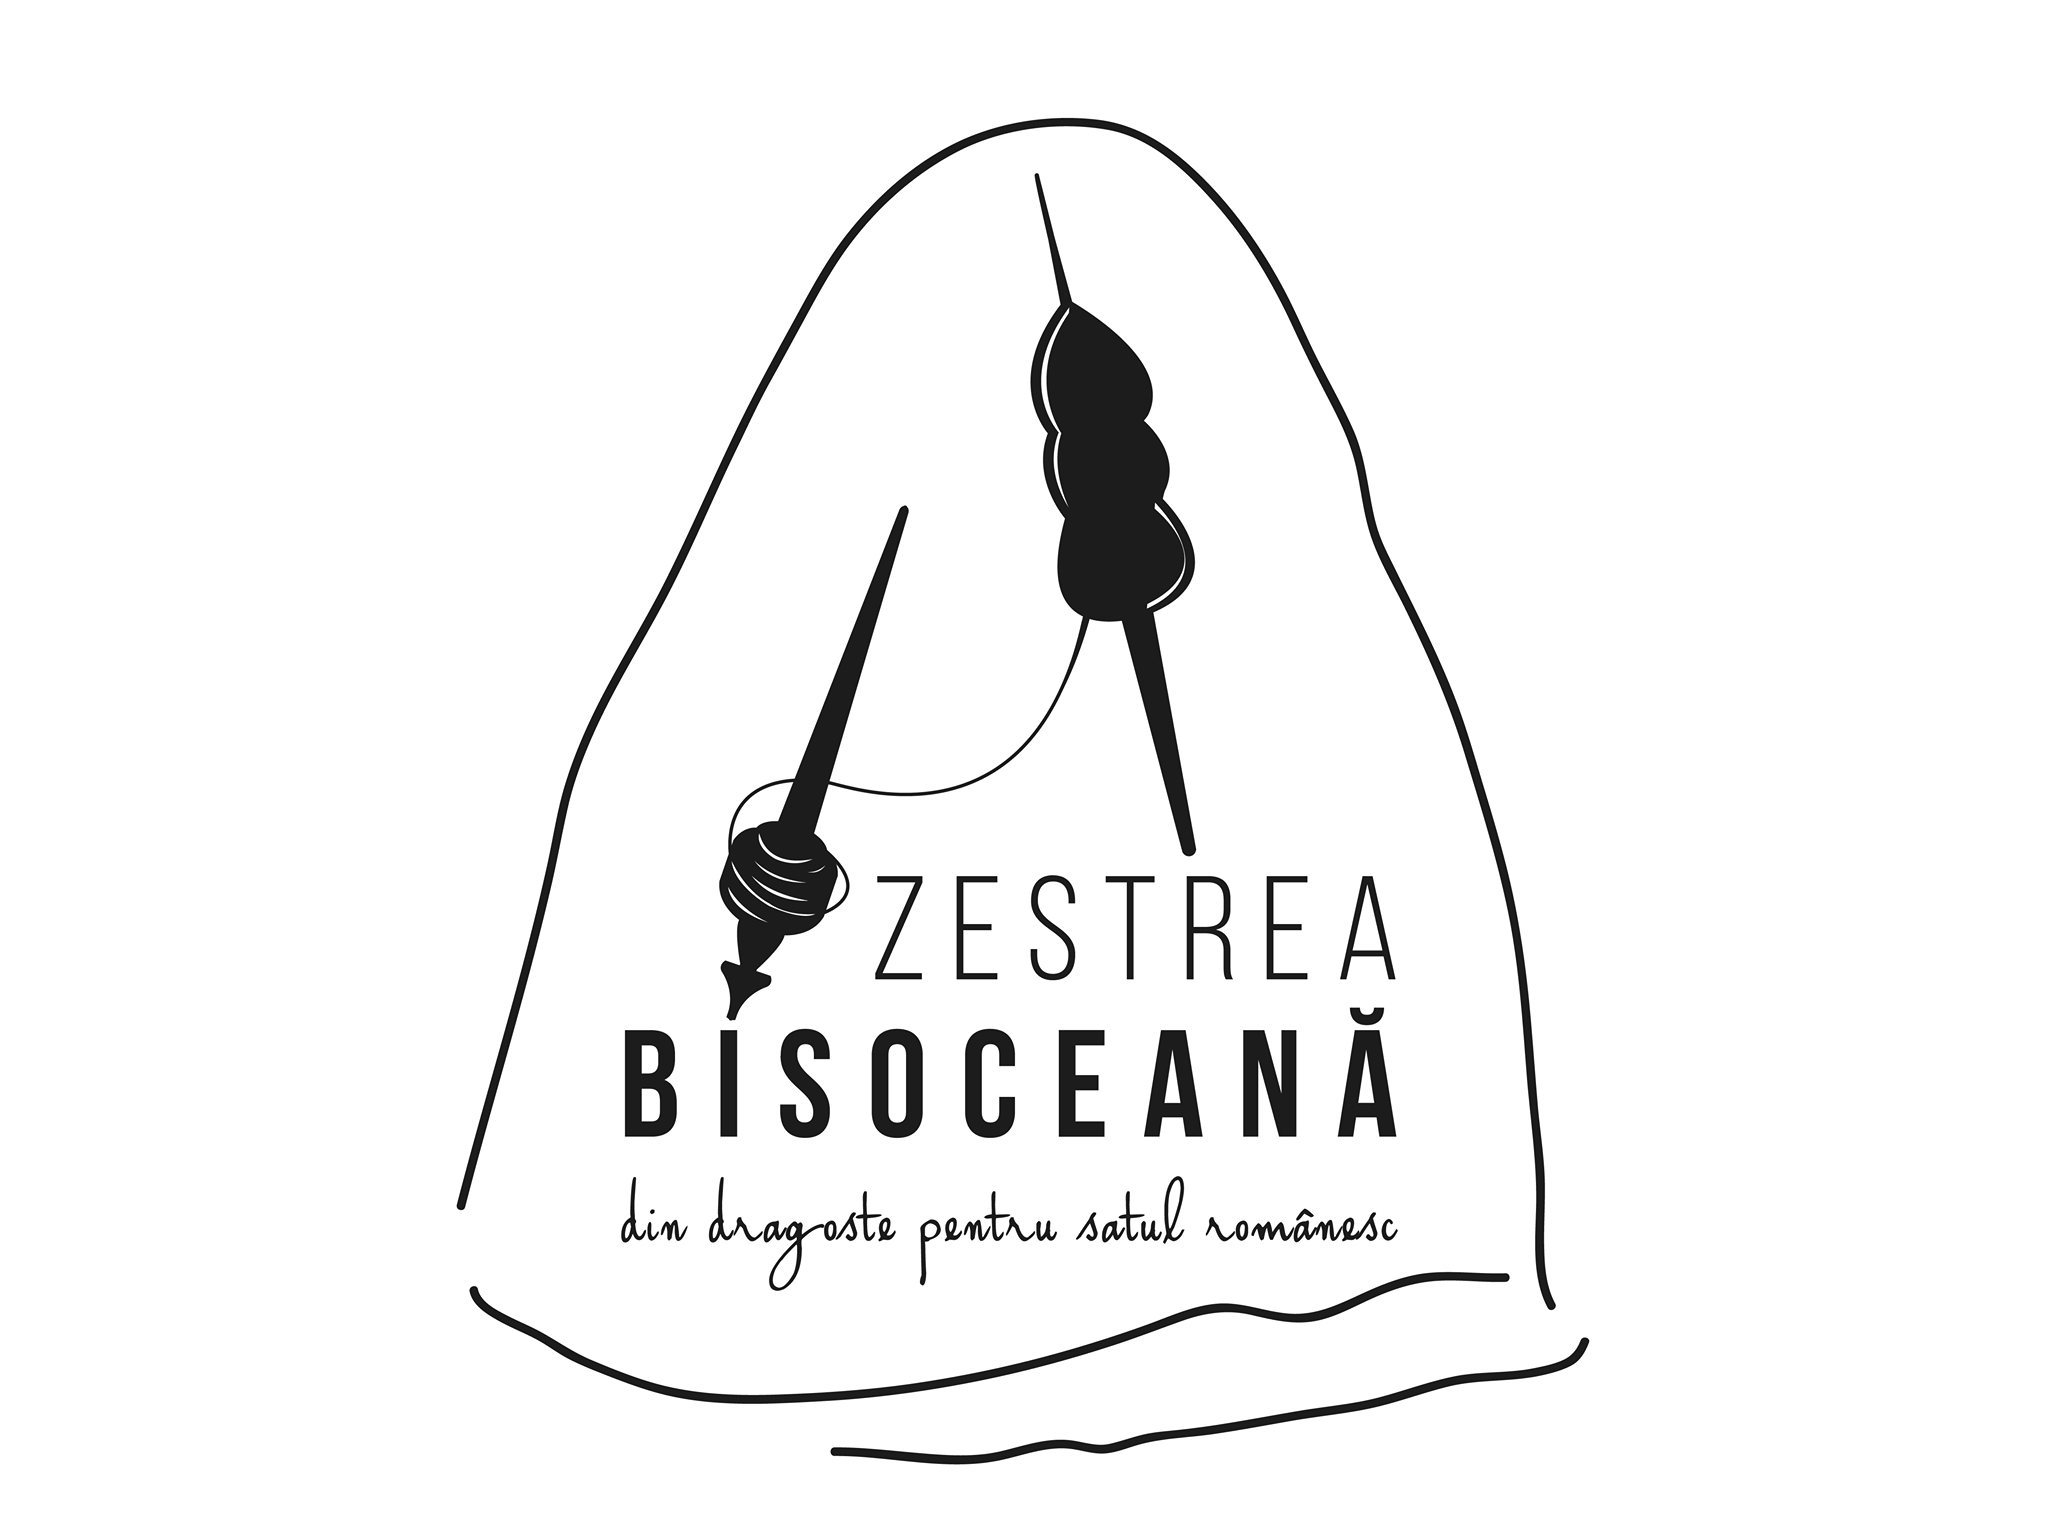 Asociatia Zestrea Bisoceana logo